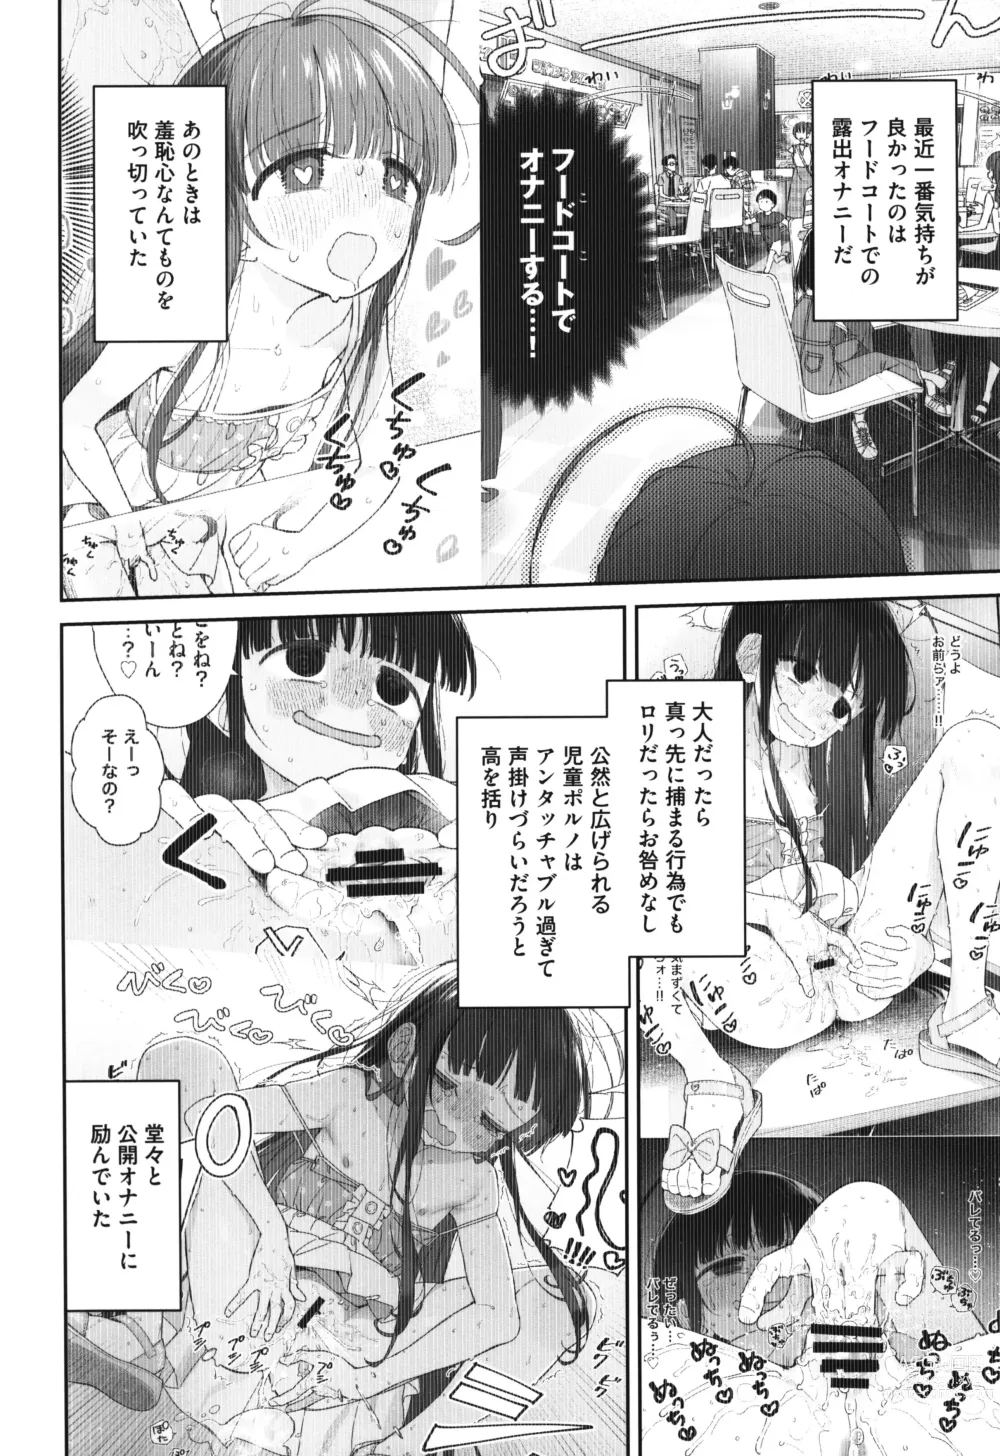 Page 5 of doujinshi TS Loli Oji-san no Bouken Kanwa -Fuwafuwa Dome Hen- - The Adventures of TS Lori guy.